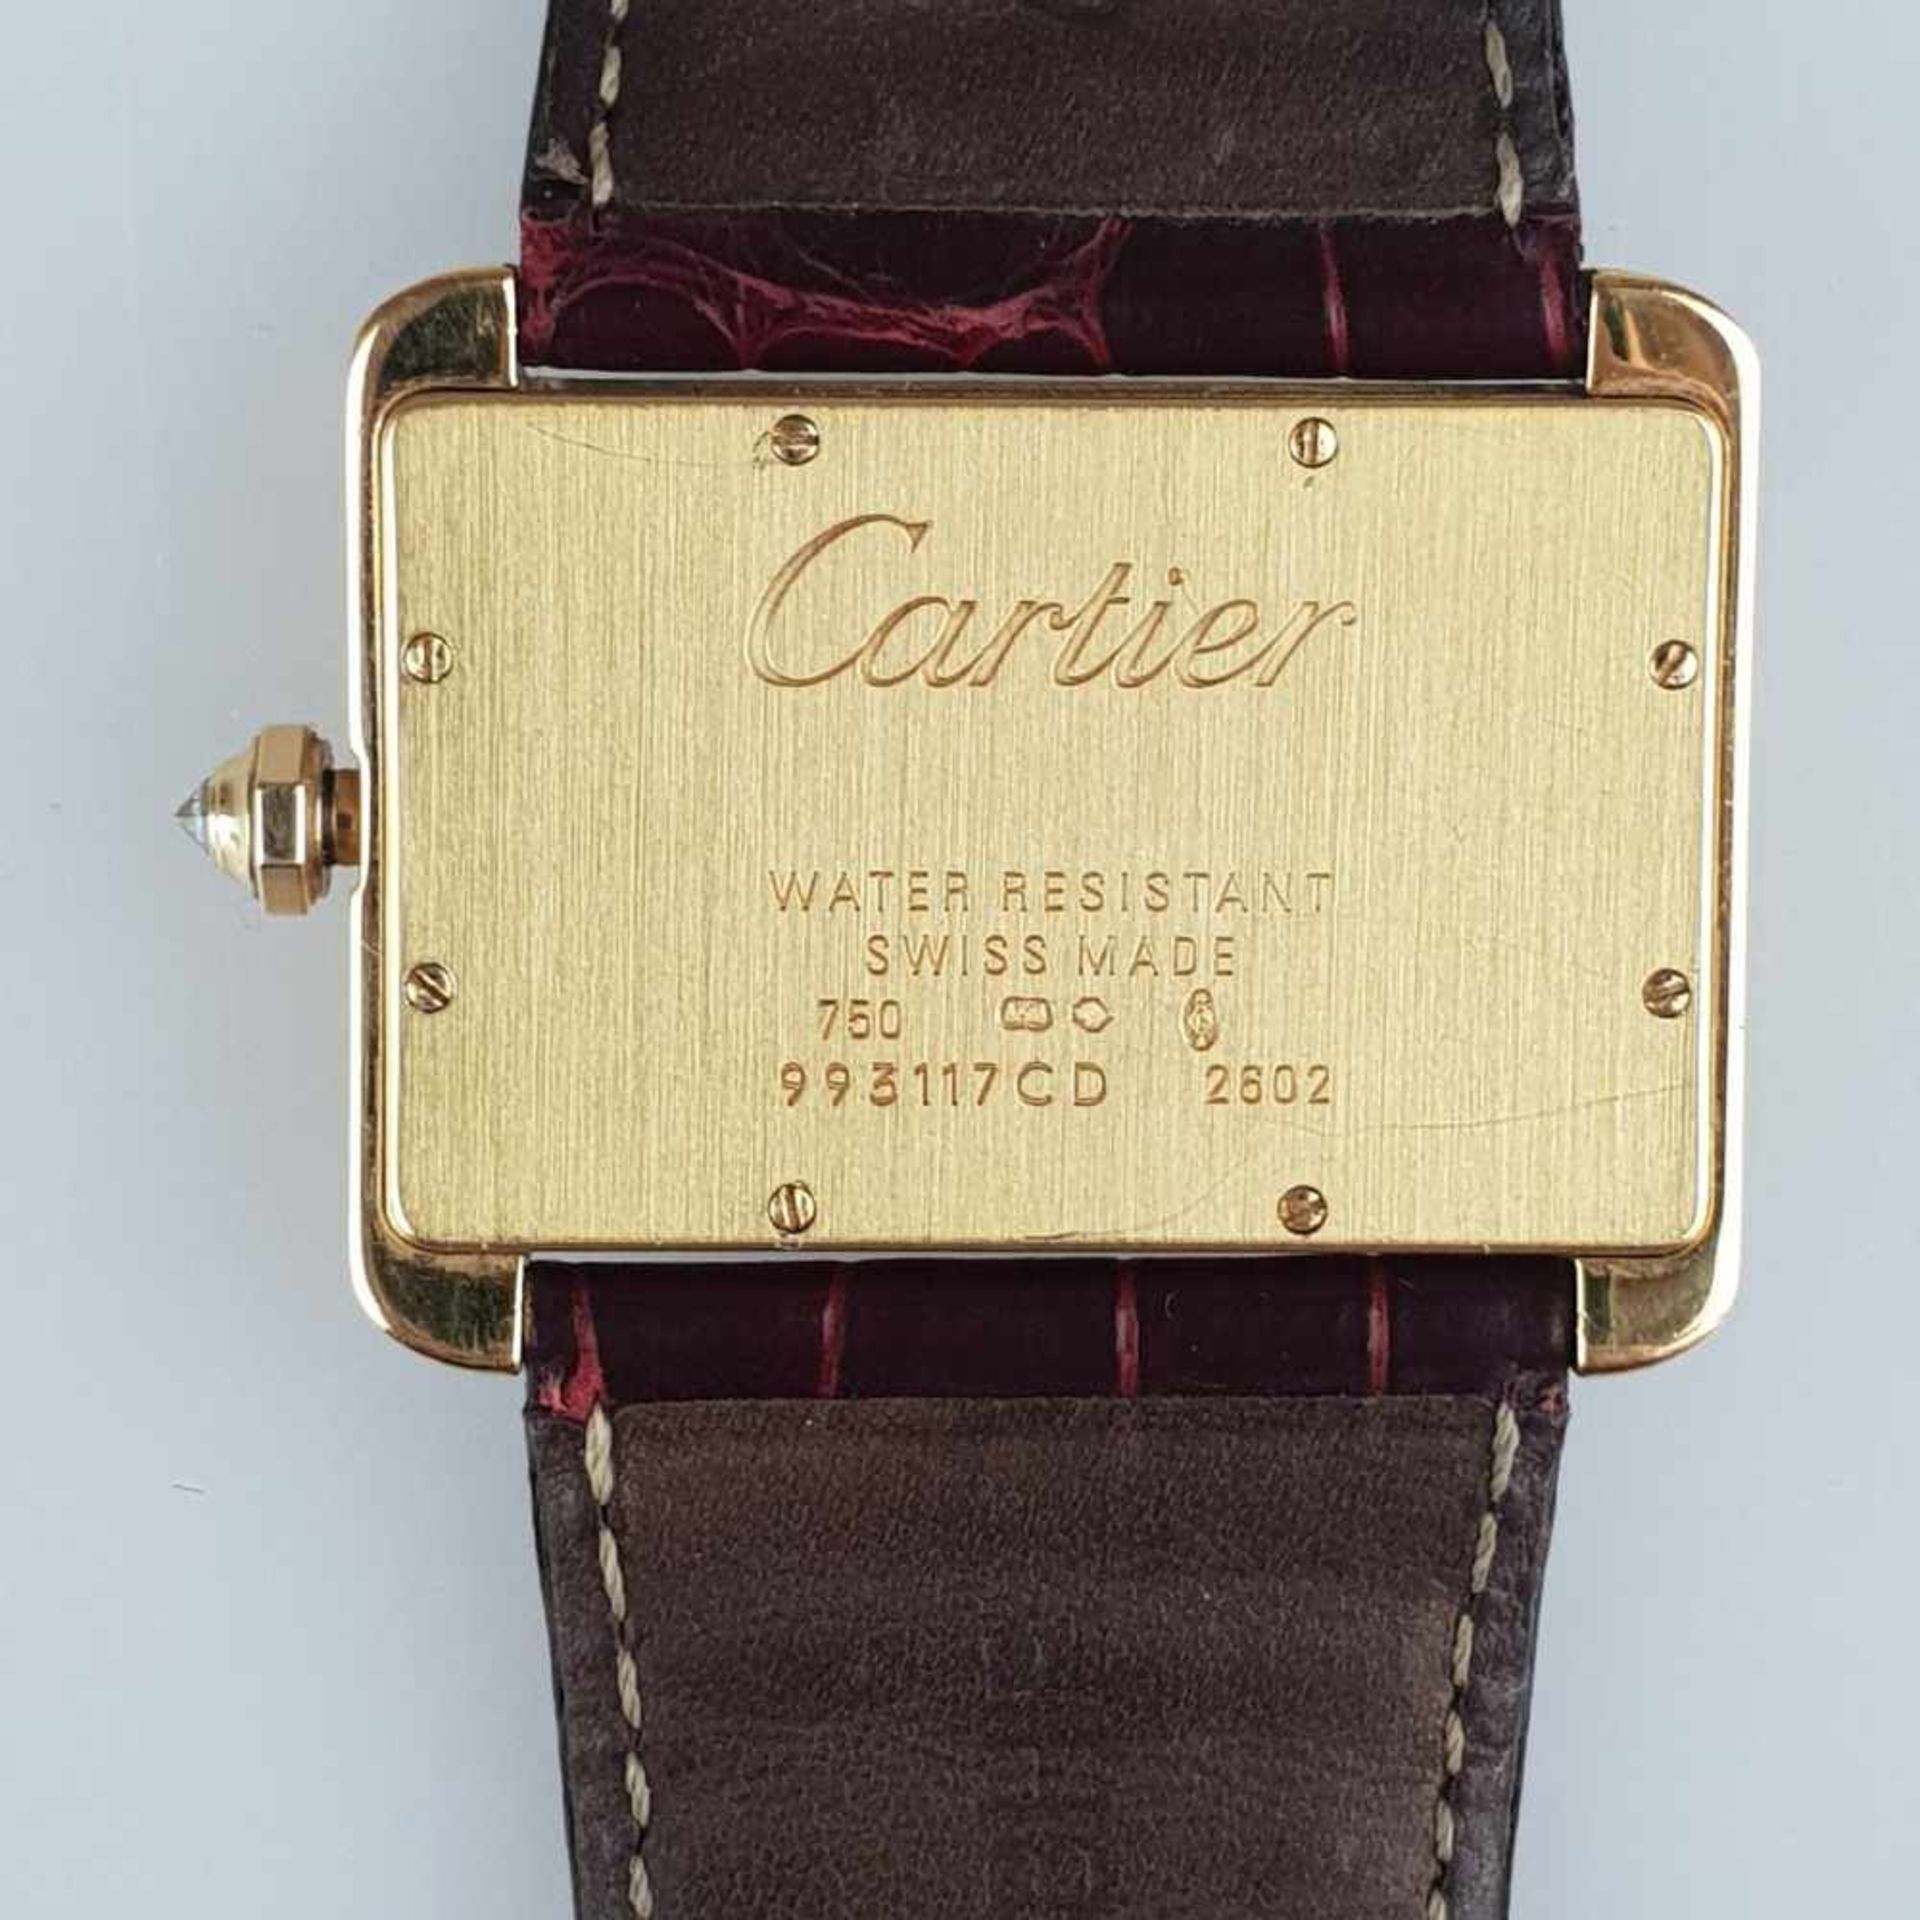 Luxuriöse Cartier-Armbanduhr - Cartier Tank Divan XL, Ref.2602, 18Kt-Gelbgold, ca. 38mm x 30mm, - Bild 7 aus 8